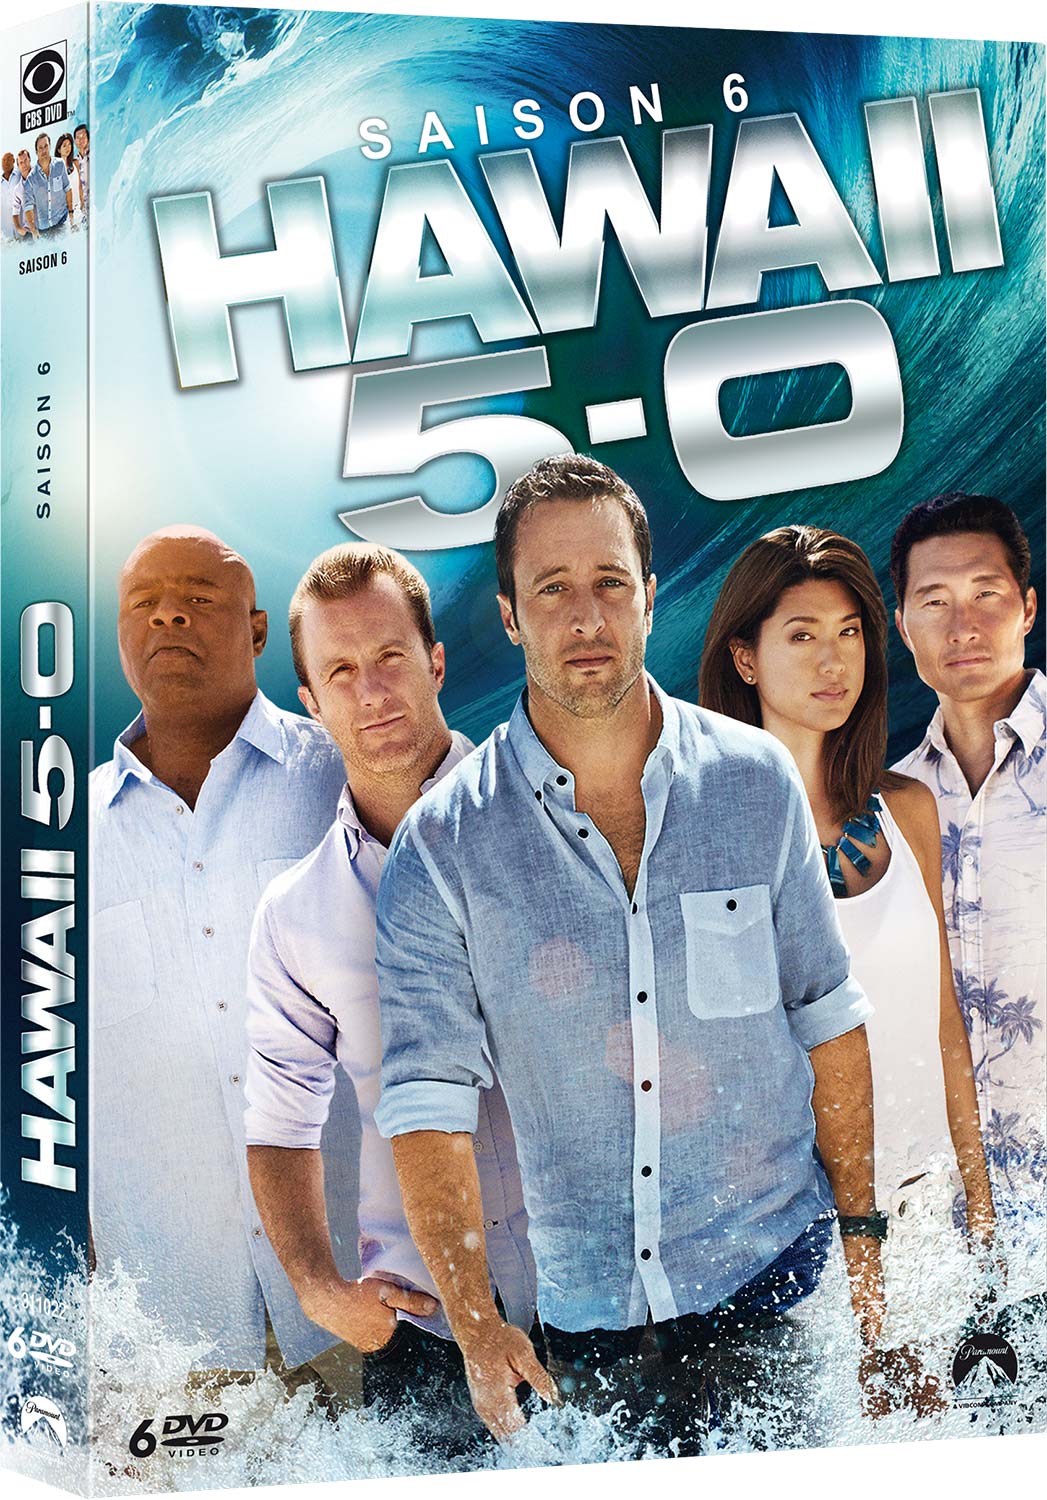 HAWAII 5-0 S06